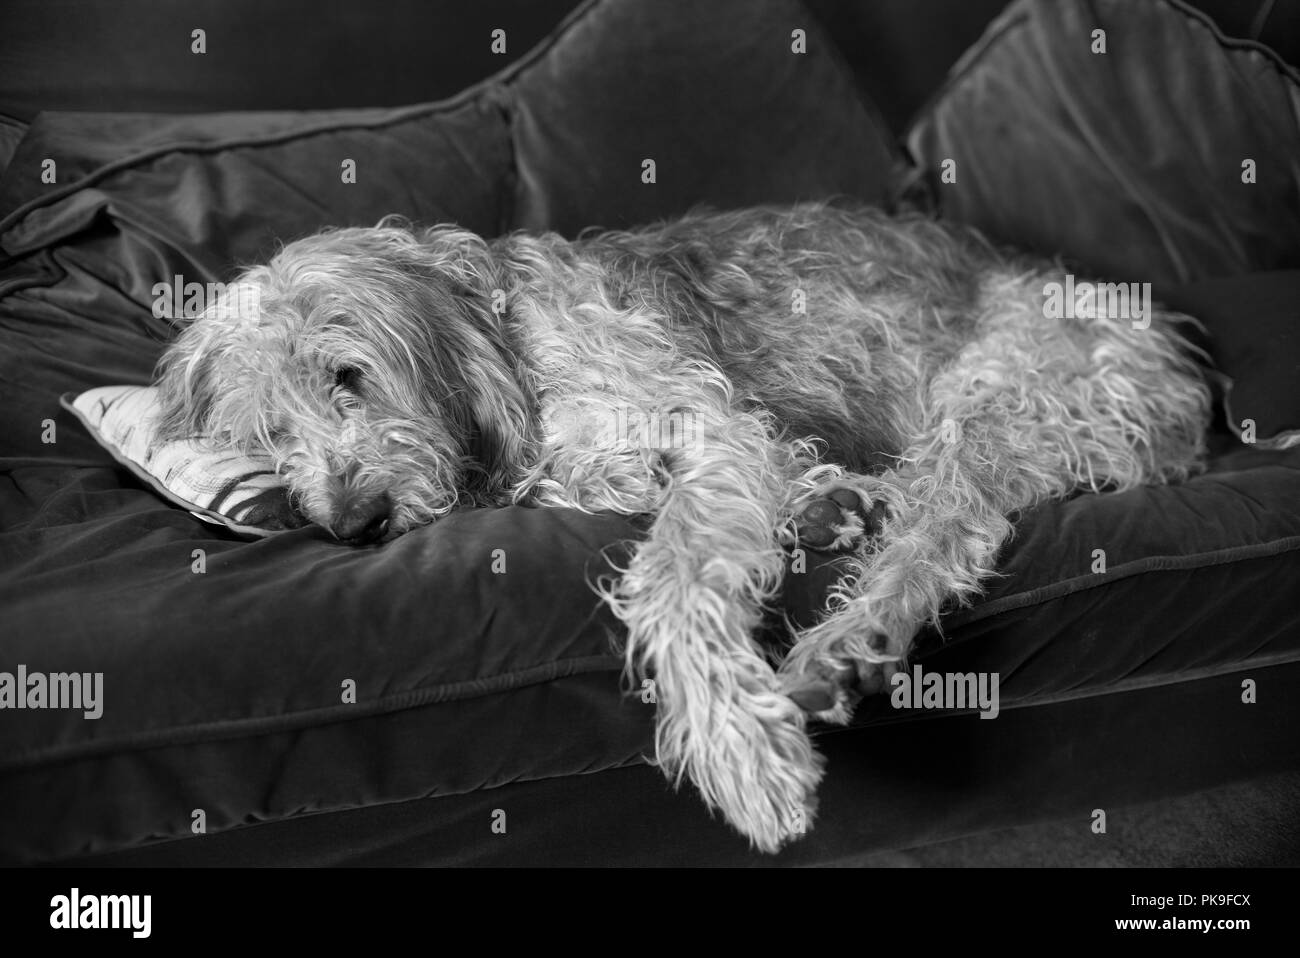 Athos the gentle griffon dozing on the sofa Stock Photo